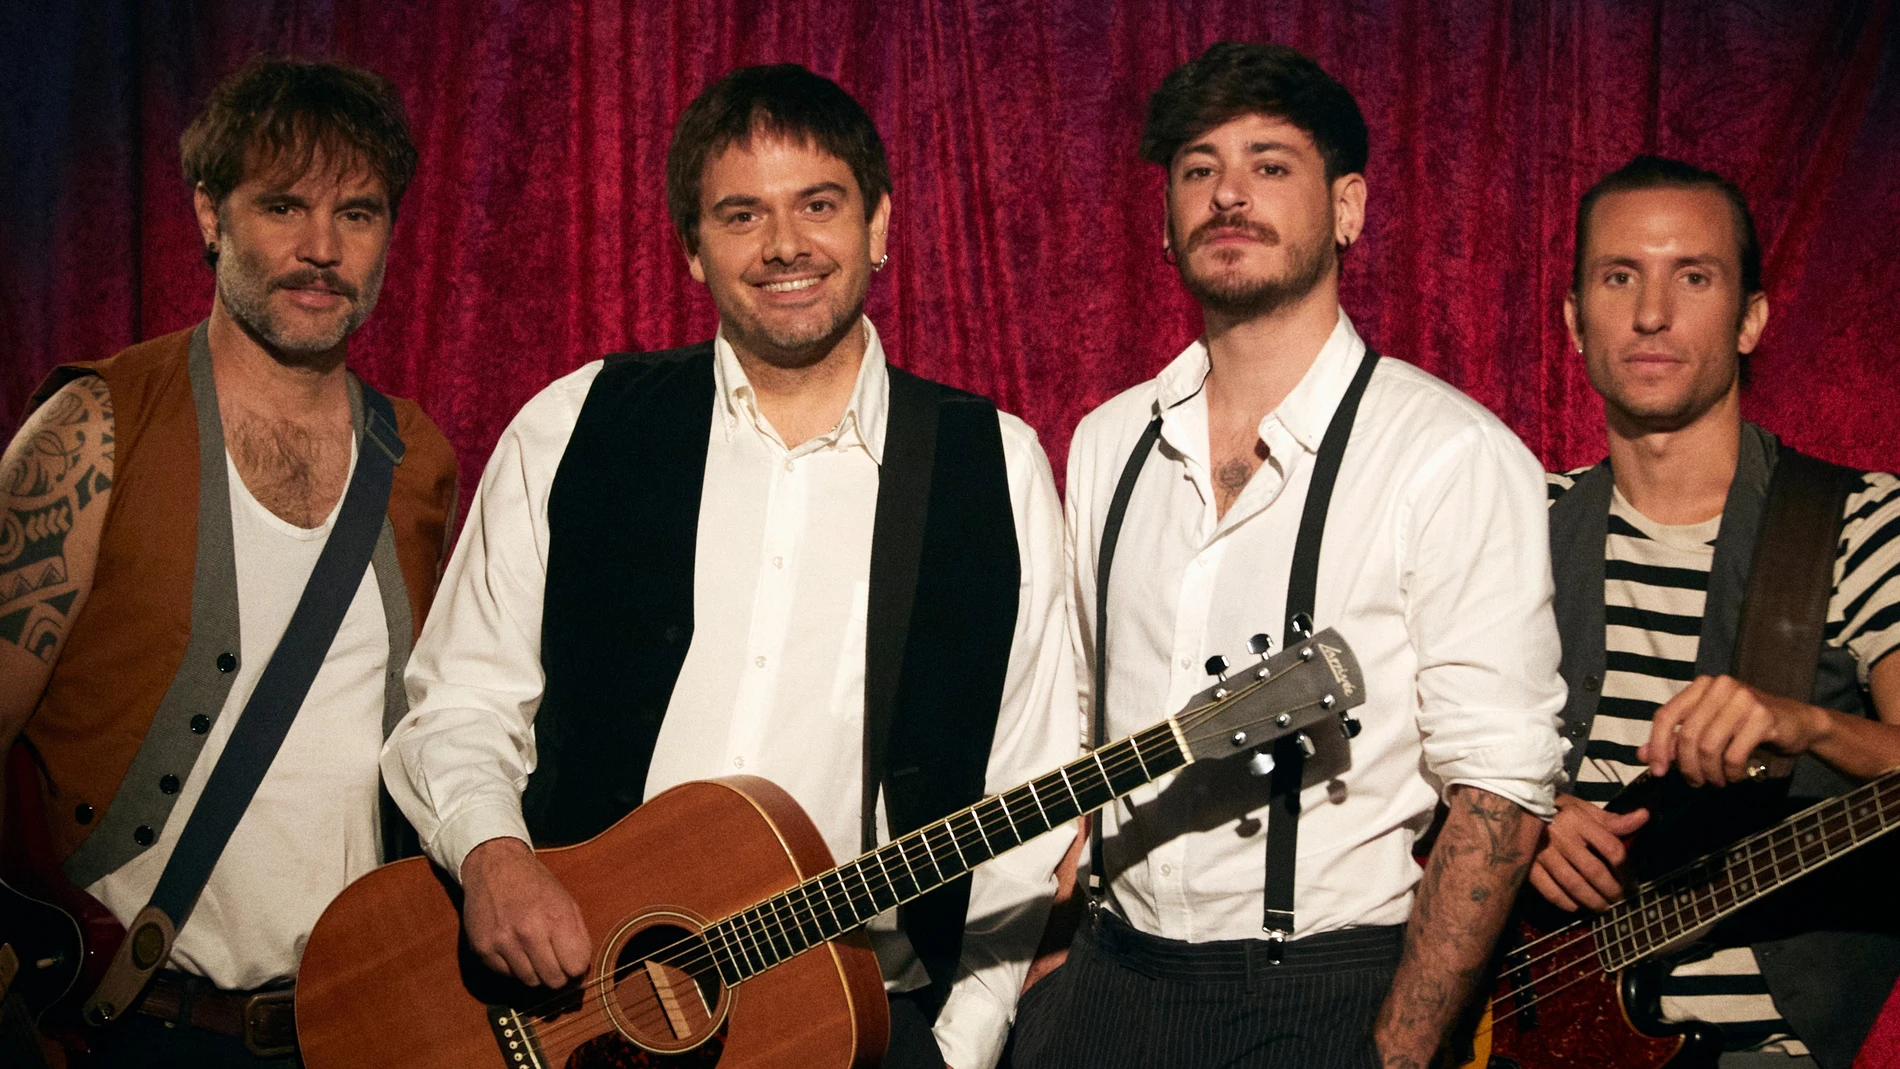 Imagen oficial de "Demasiado tarde" con Despistaos, Cepeda y Martín (Dvicio).